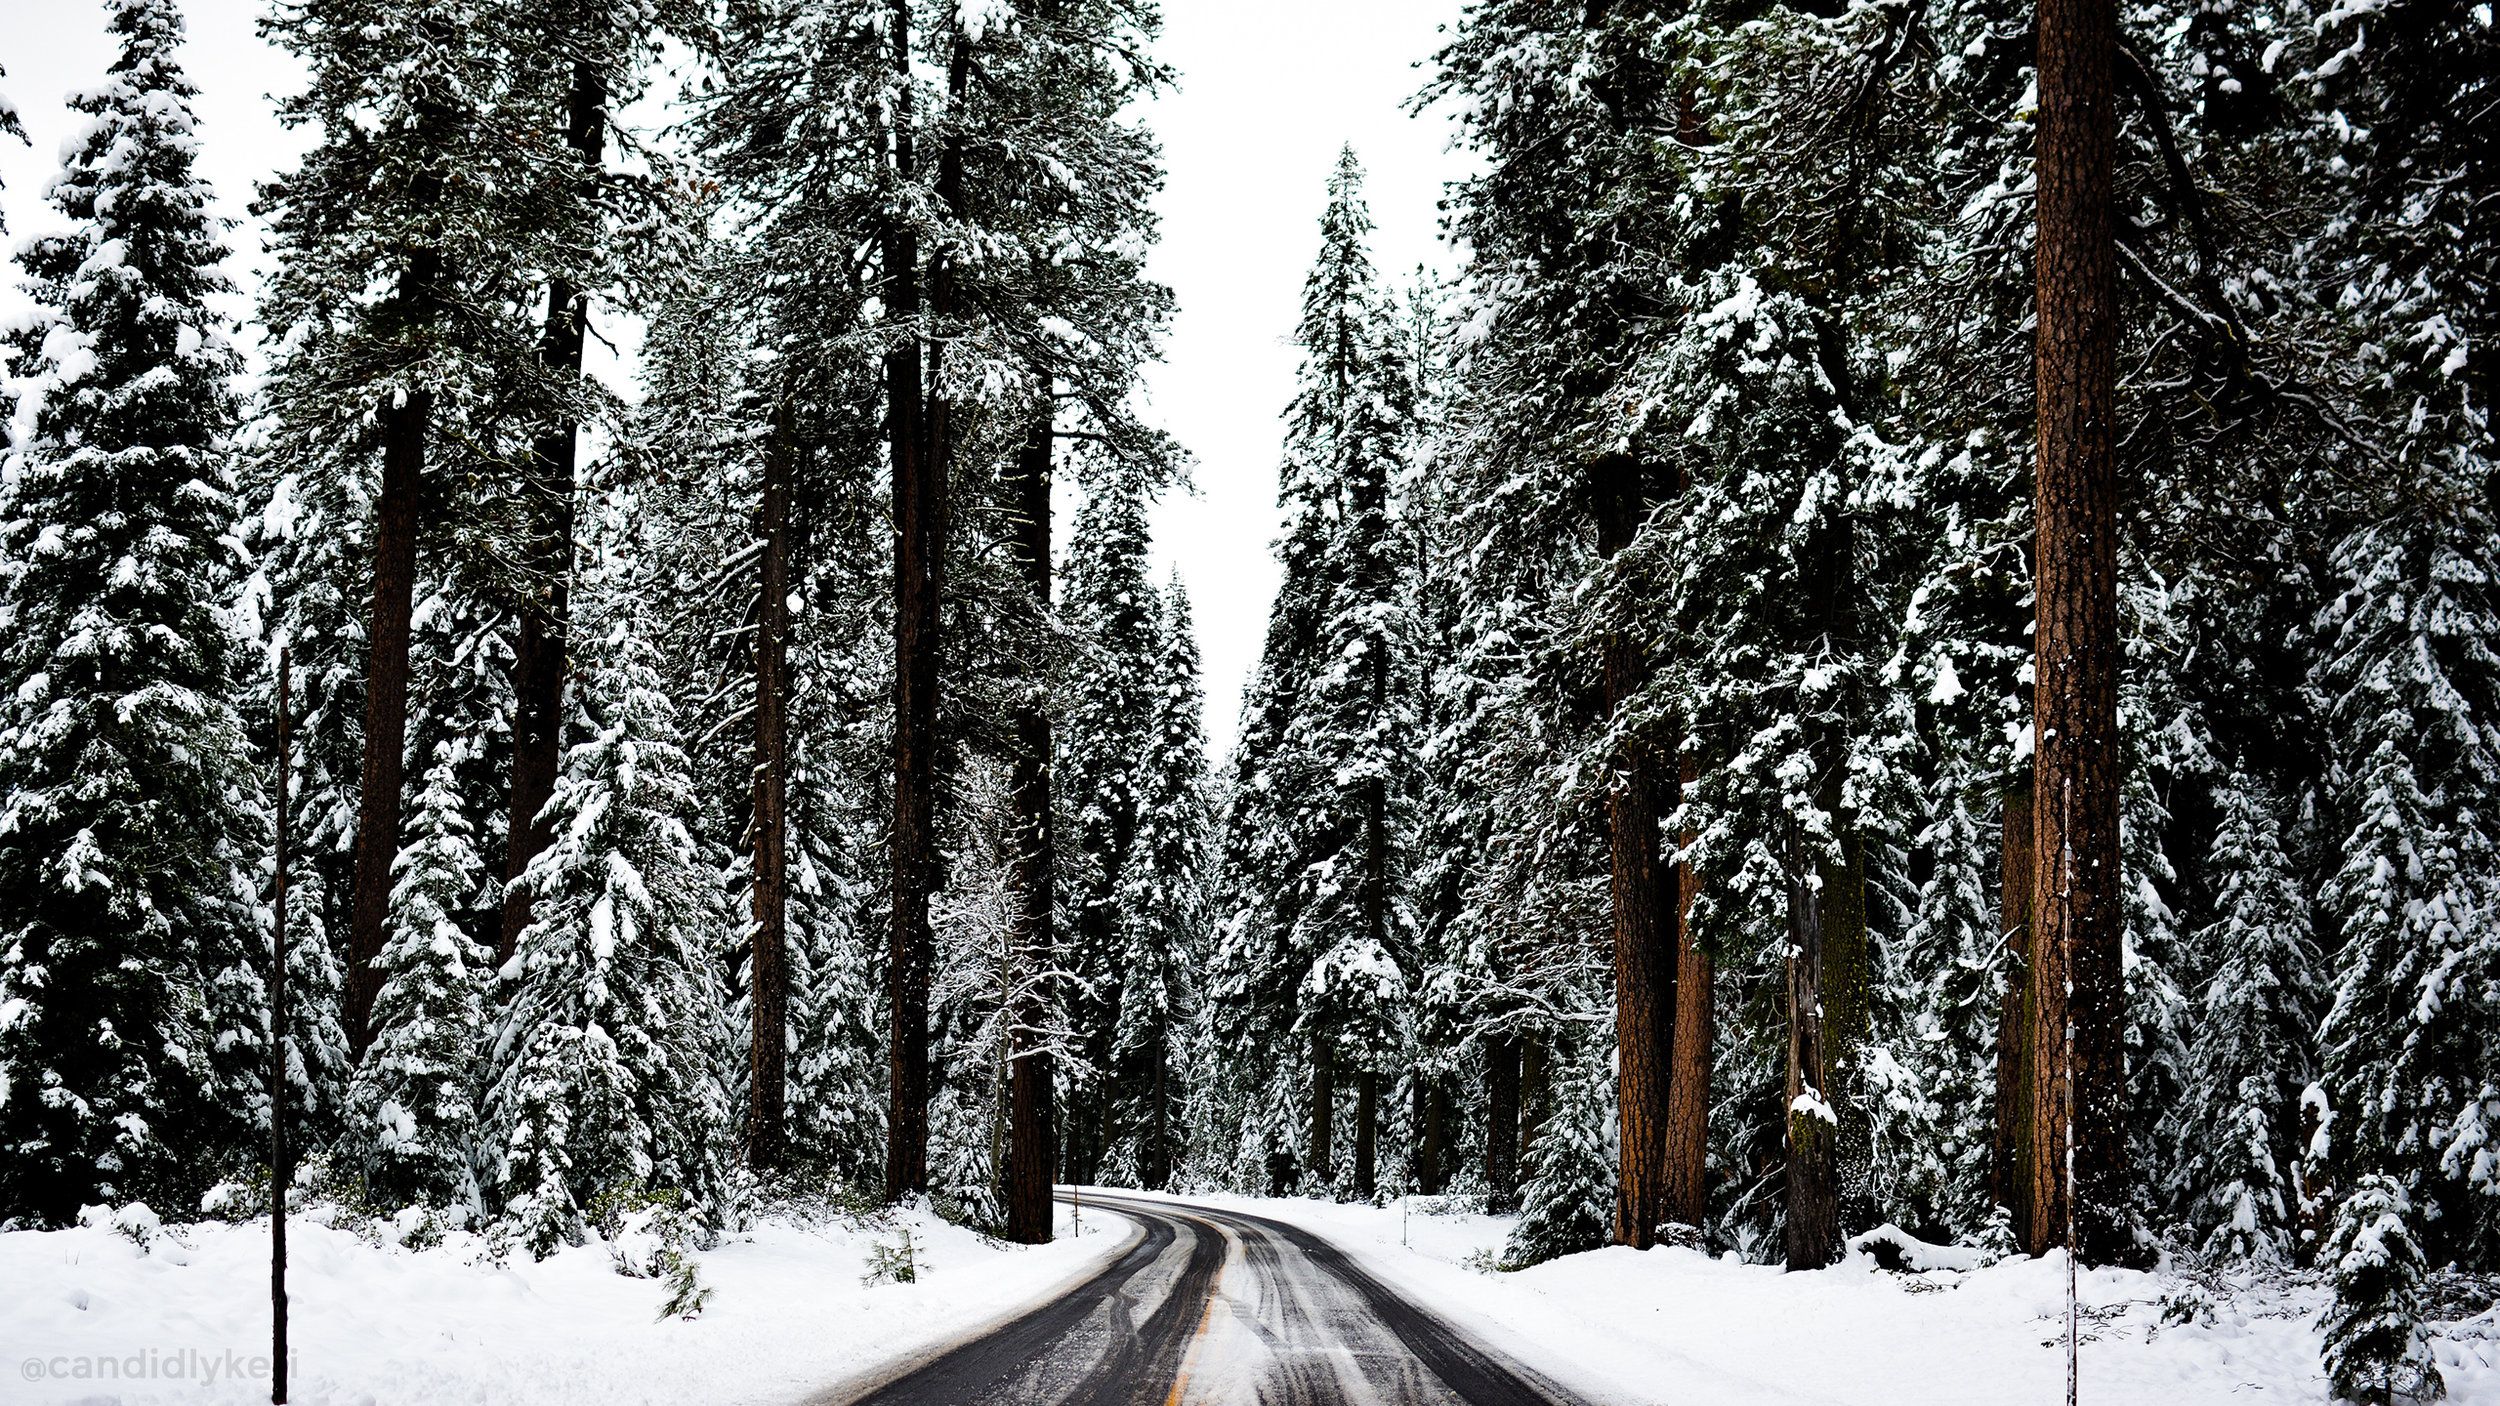 macbook navidad fondo de pantalla,nieve,árbol,invierno,bosque de abeto abeto,bosque